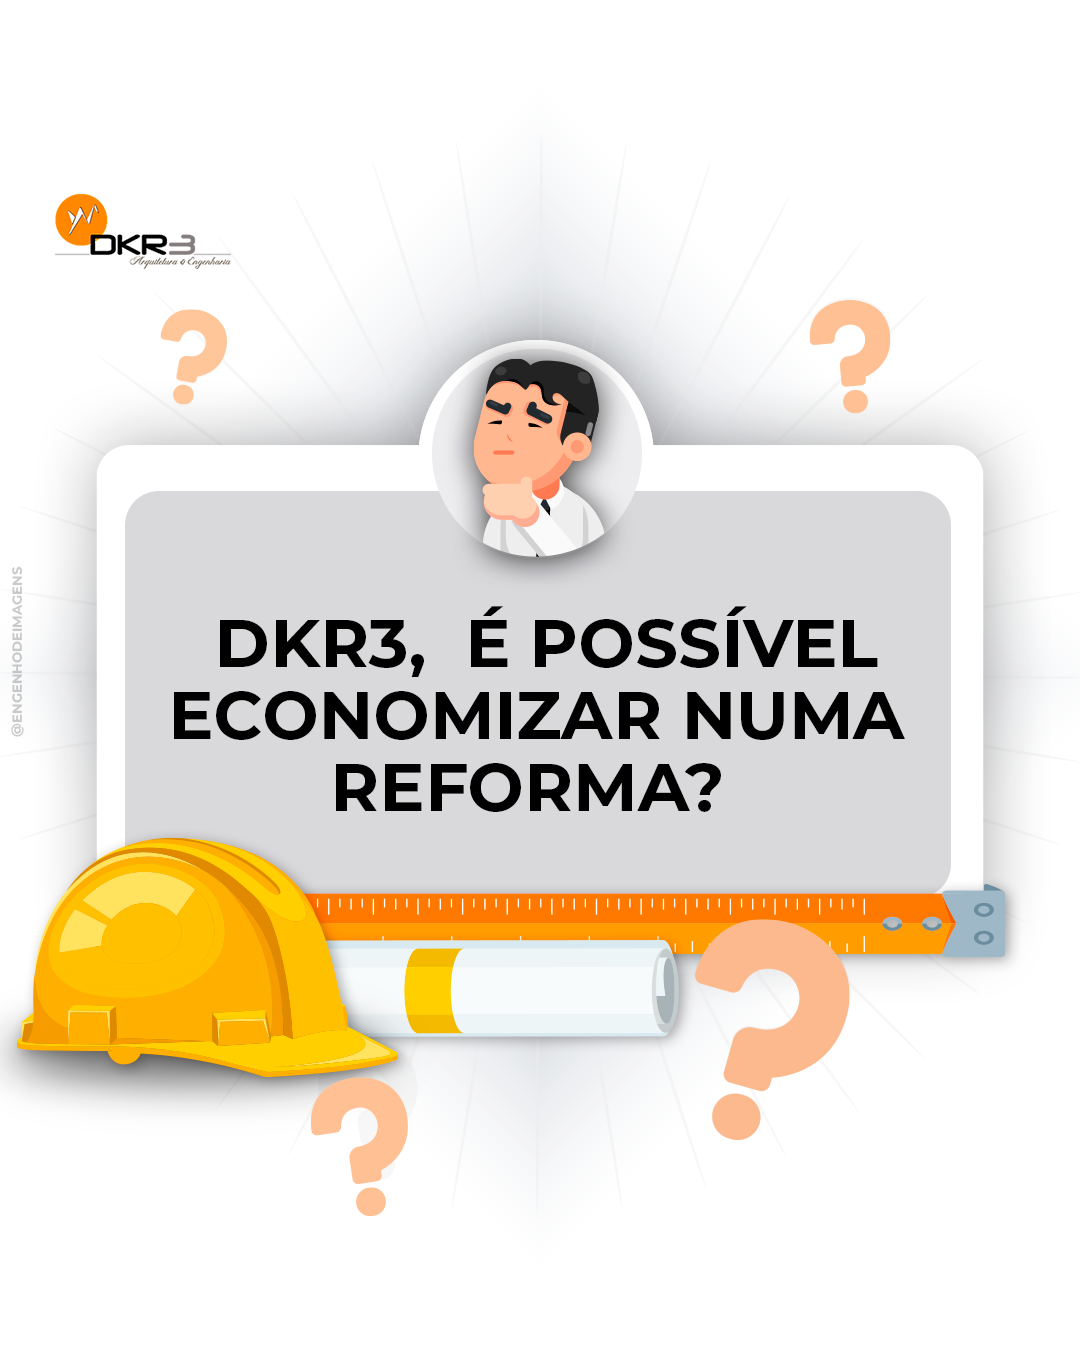 Transforme sonhos em realidade: reformas econômicas pela DKR3